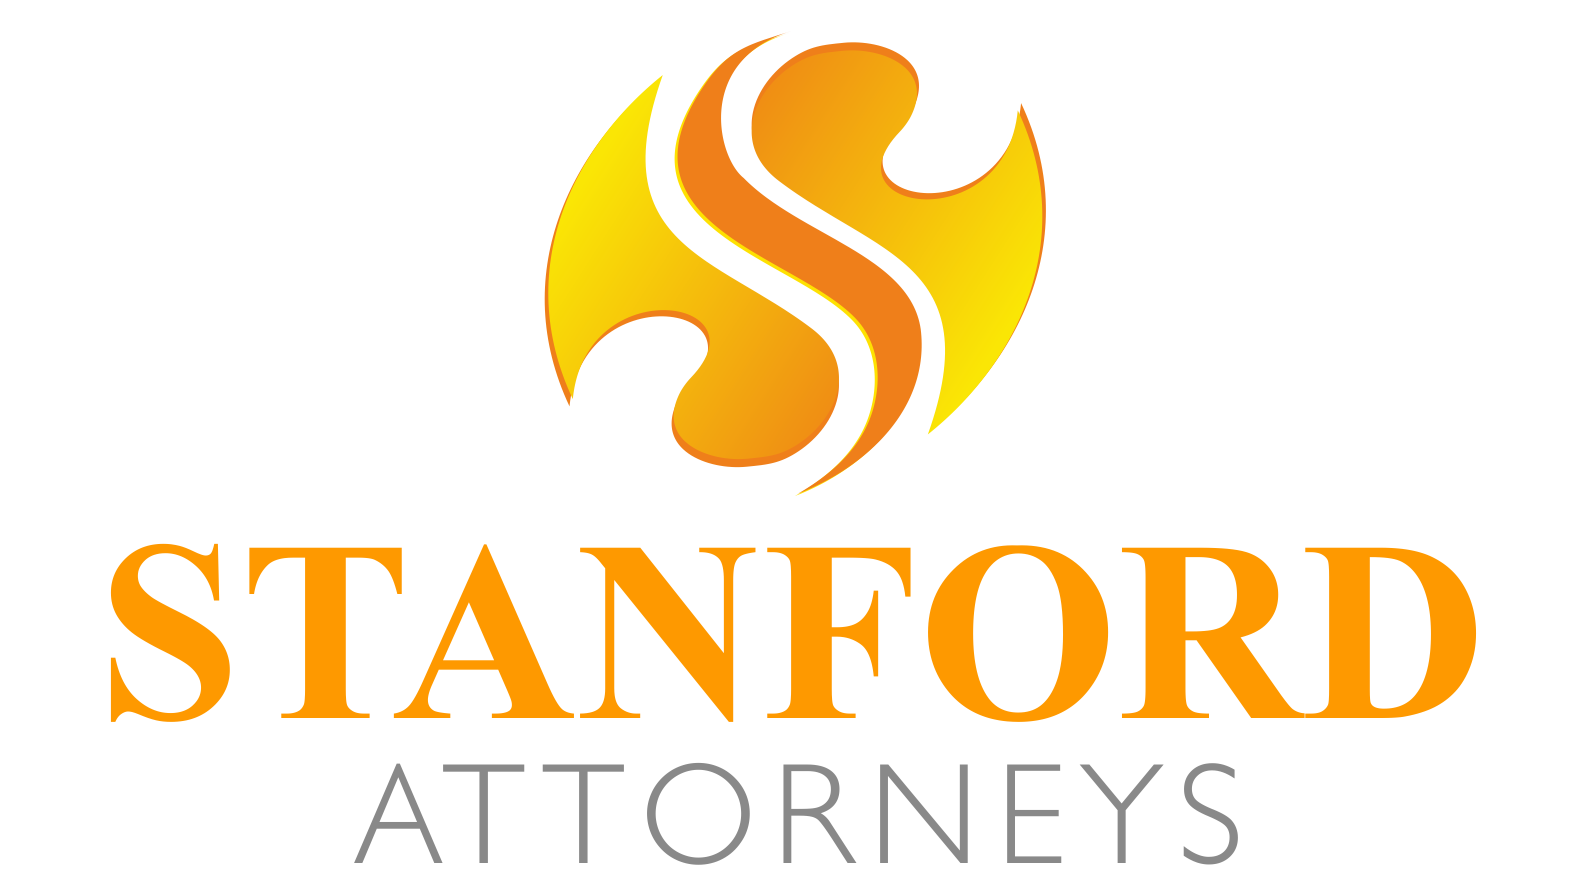 Stanford Attorneys